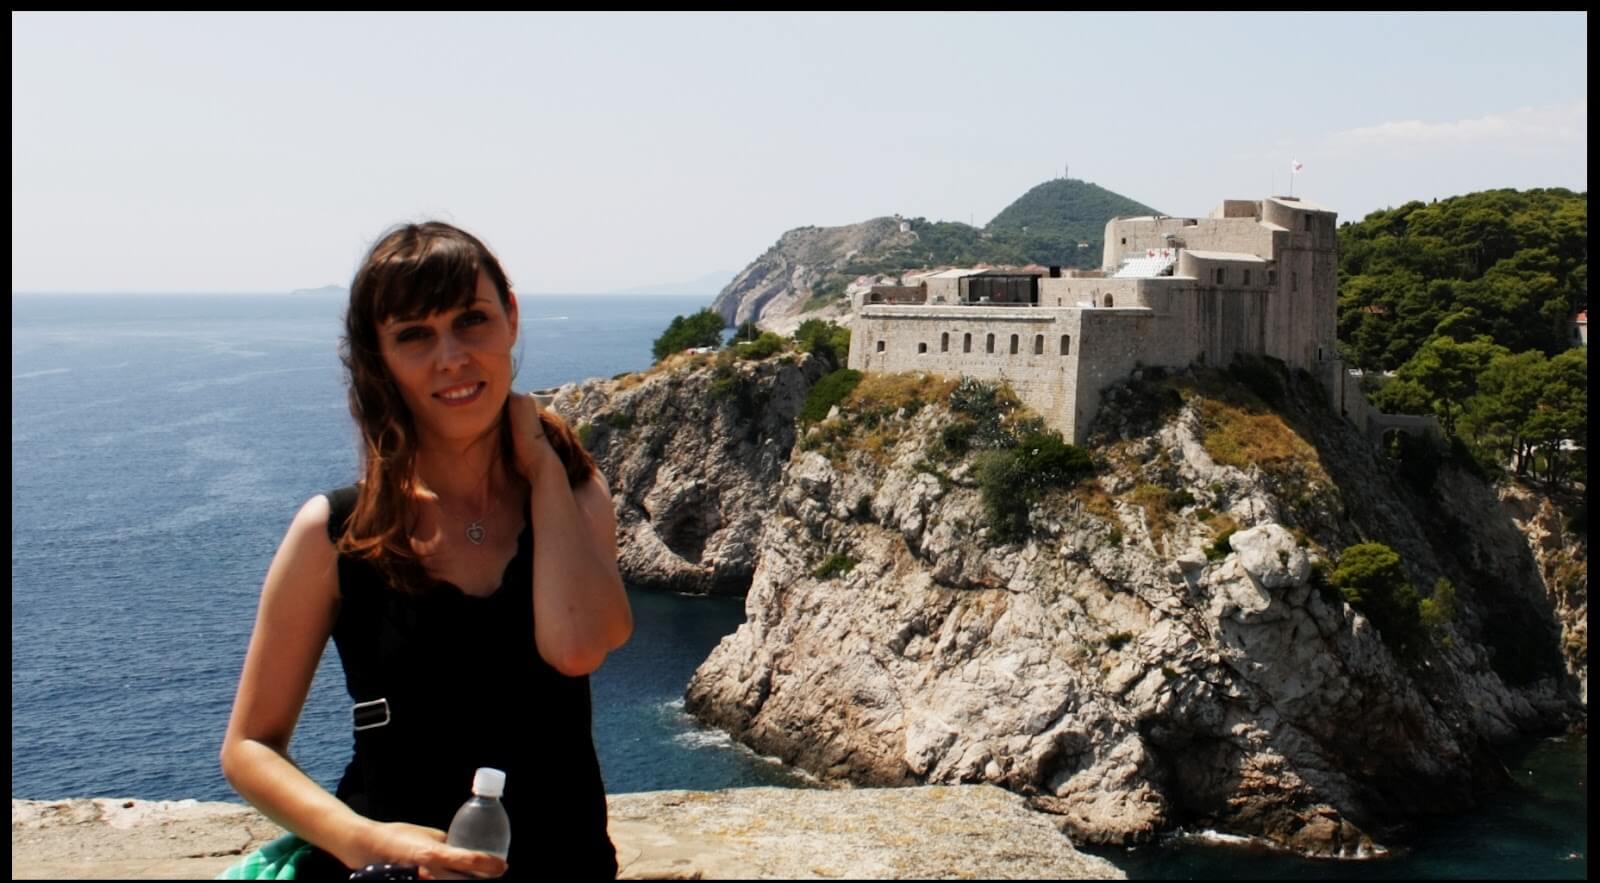 Jurnal de călătorie singuratică. Ziua 5 (Dubrovnik) 